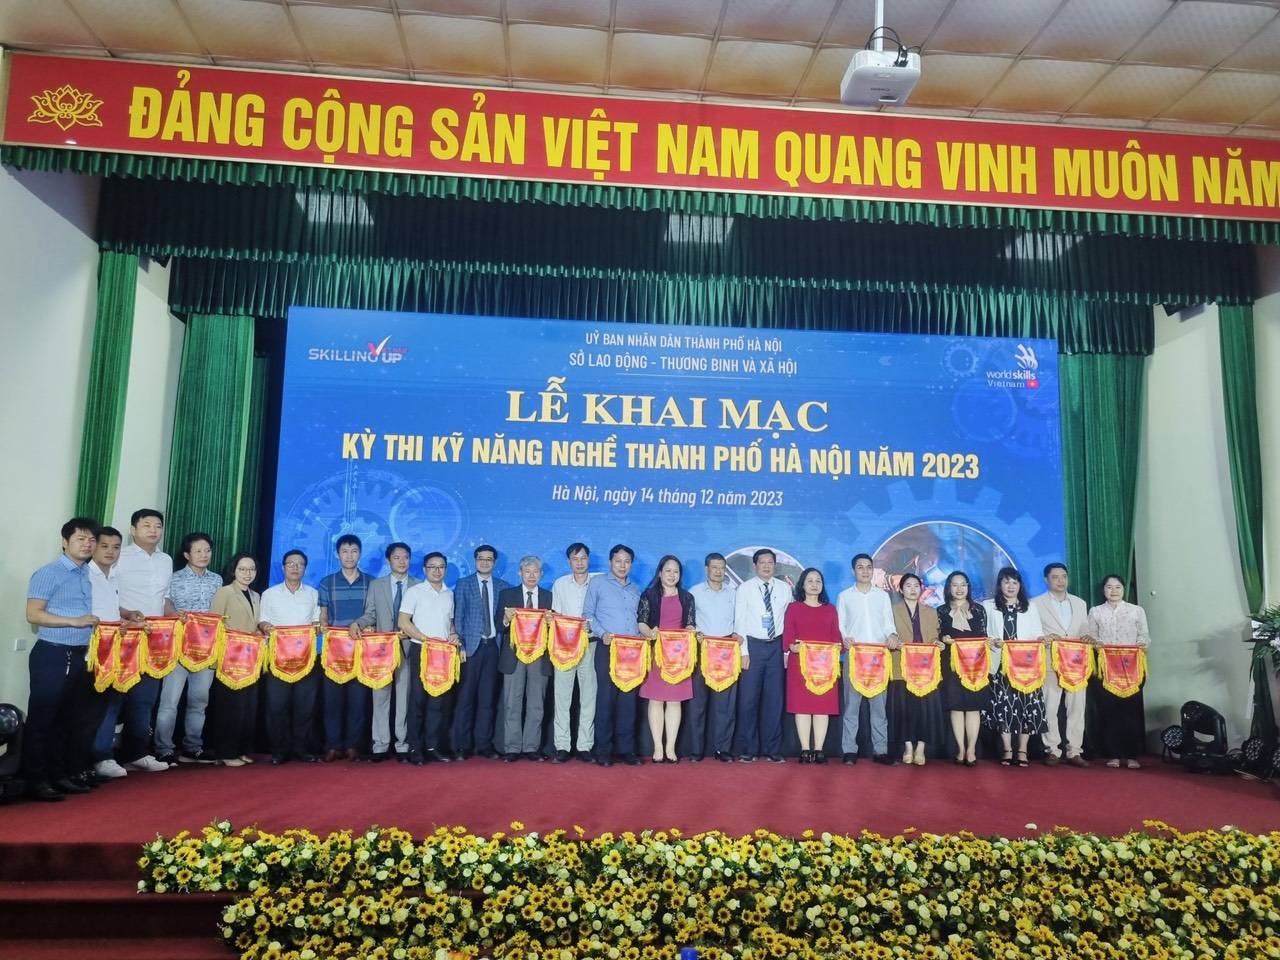 10 sinh viên Trường Đại học Công nghiệp Hà Nội tham dự Kỳ thi Kỹ năng nghề TP Hà Nội